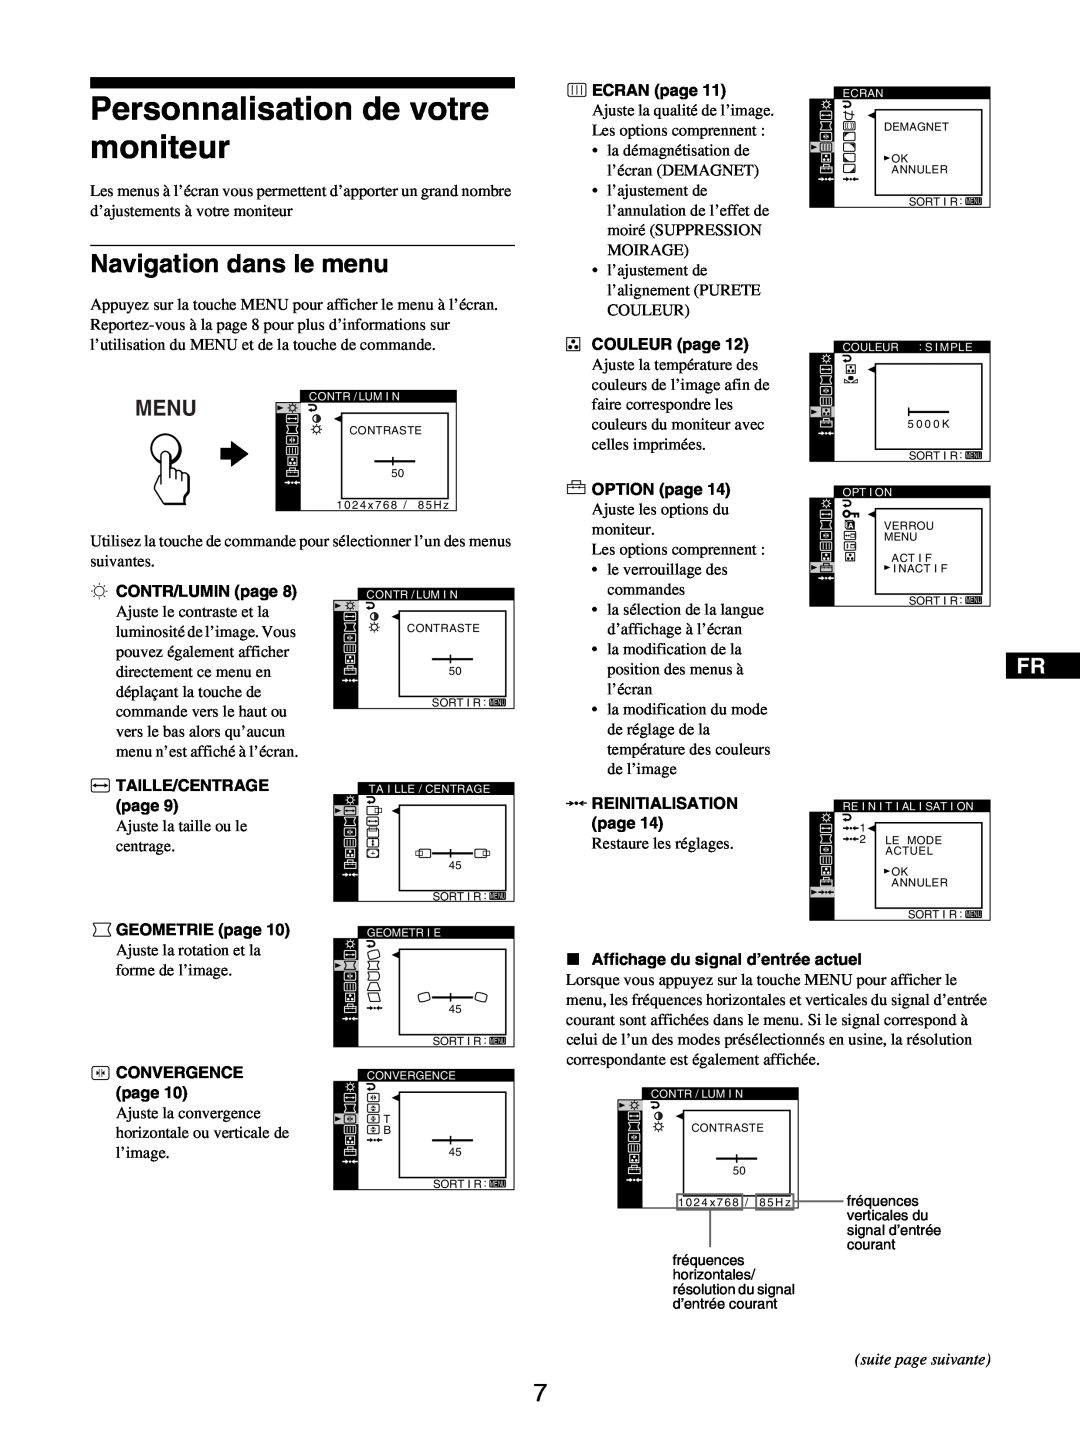 Sony GDM-5510 operating instructions Personnalisation de votre moniteur, Navigation dans le menu, Menu, suite page suivante 